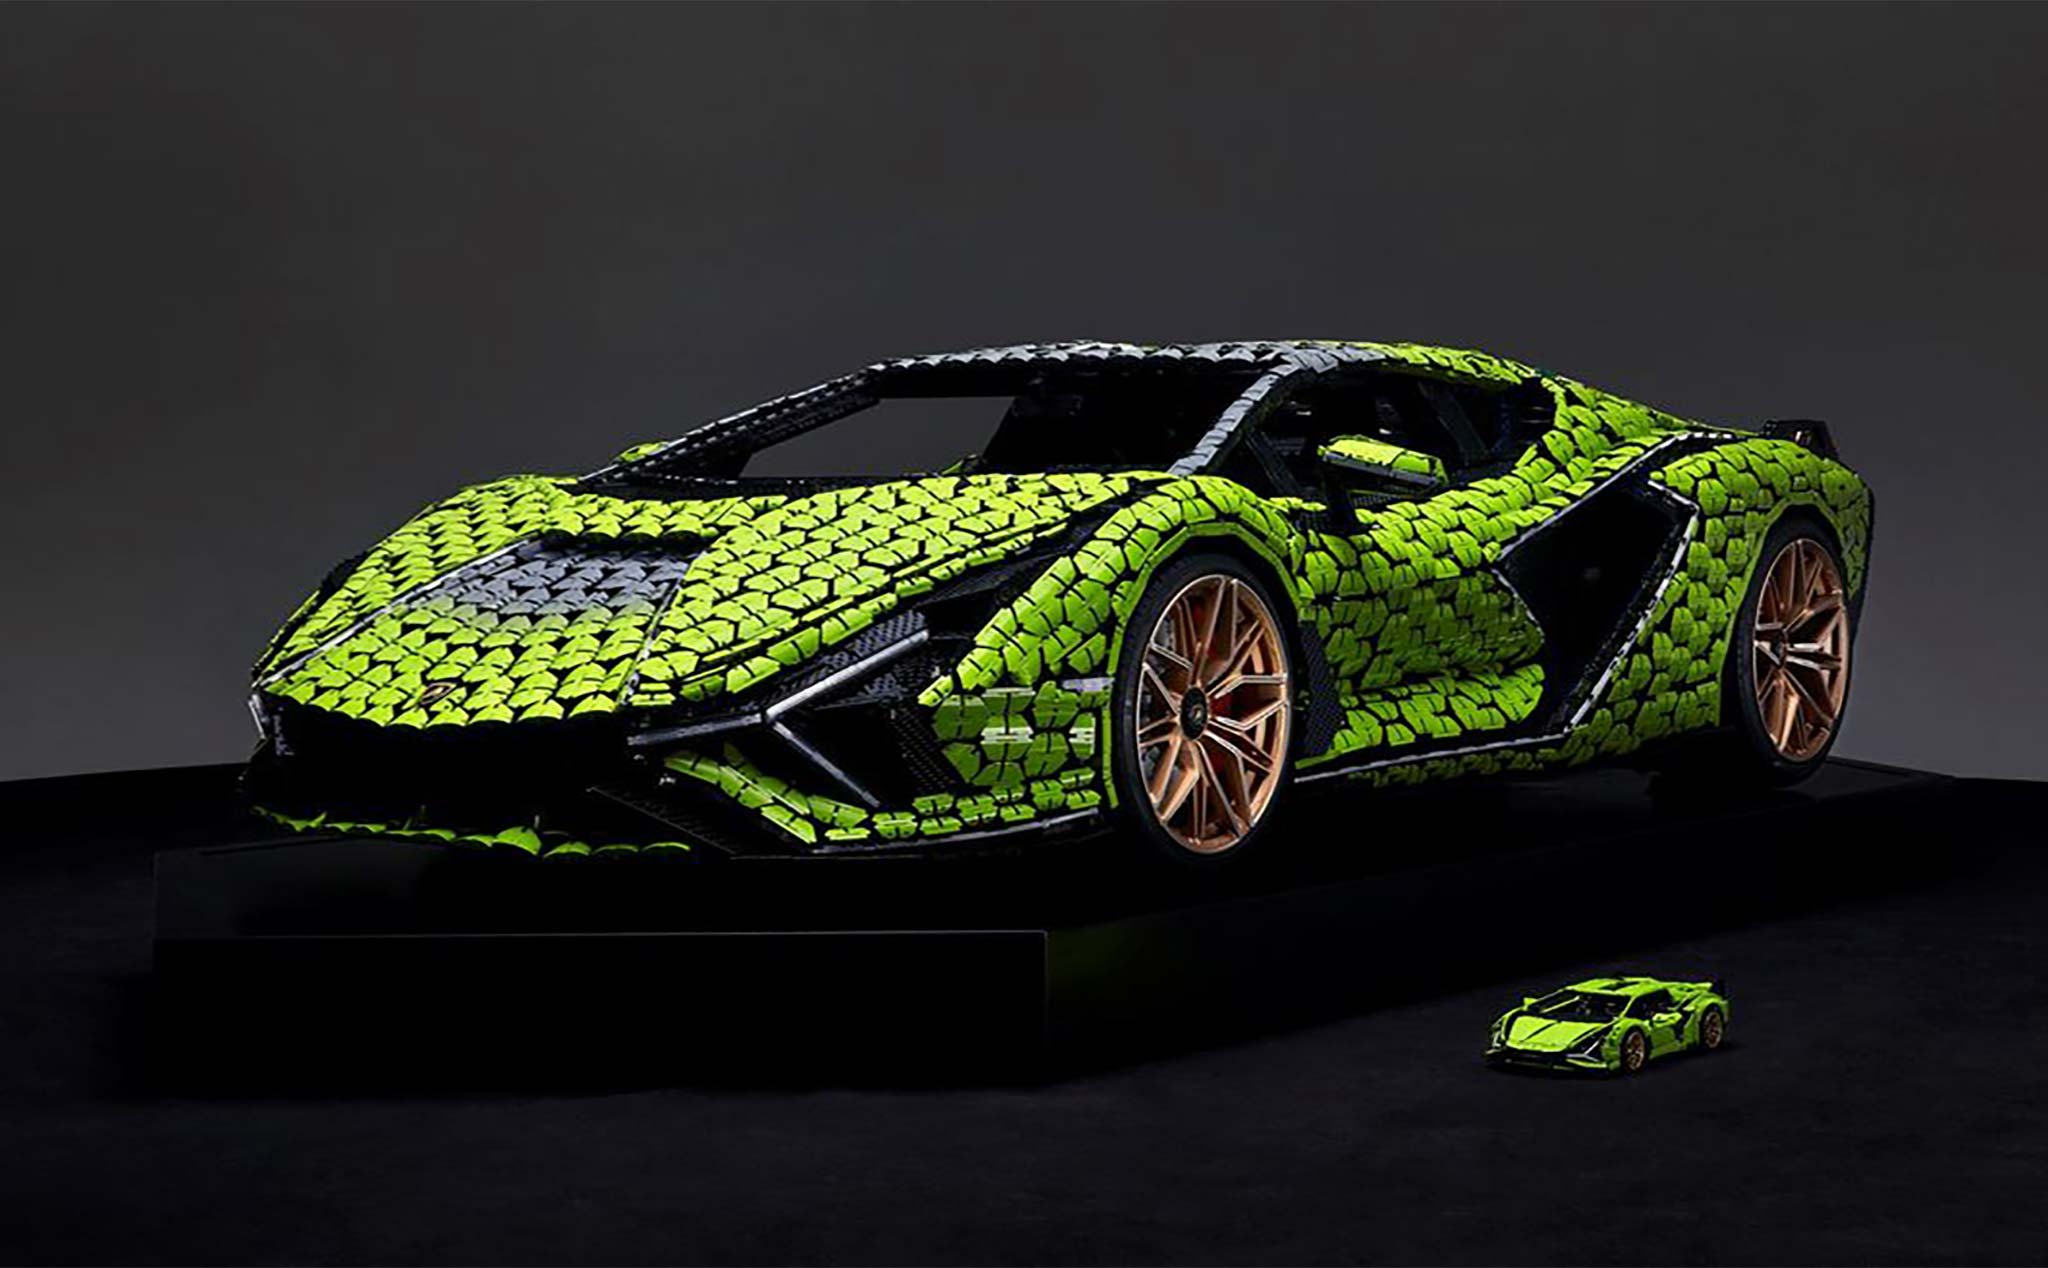 LEGO chế tạo Lamborghini Sián FKP 37 kích thước thật từ 400.000 mảnh